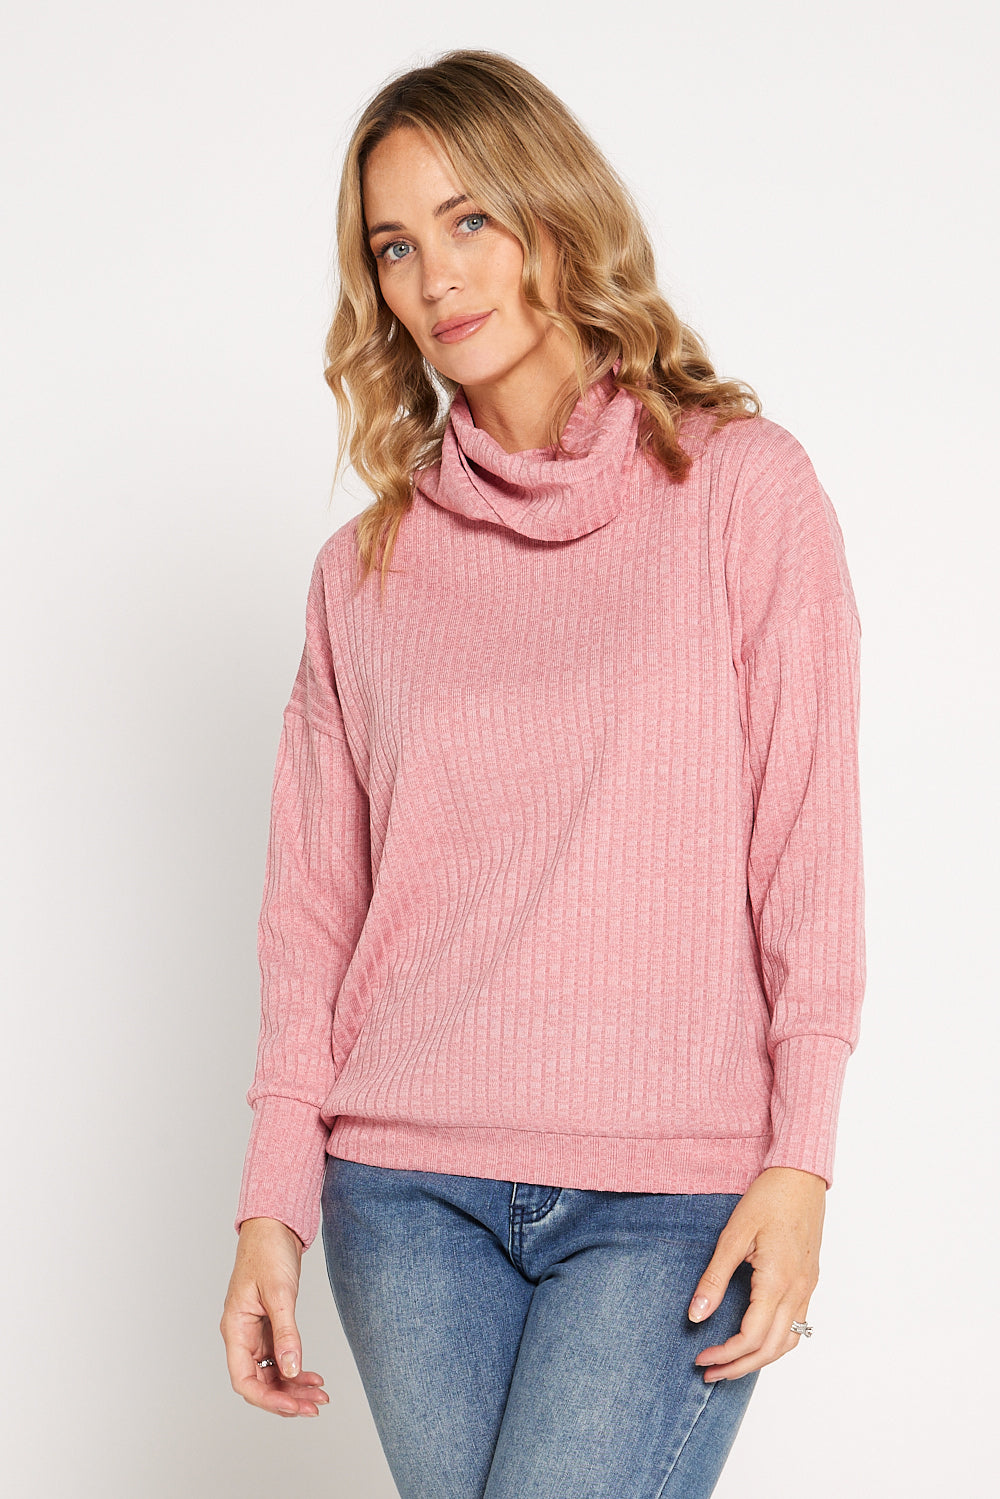 Taryn Cowl Knit Top - Pink